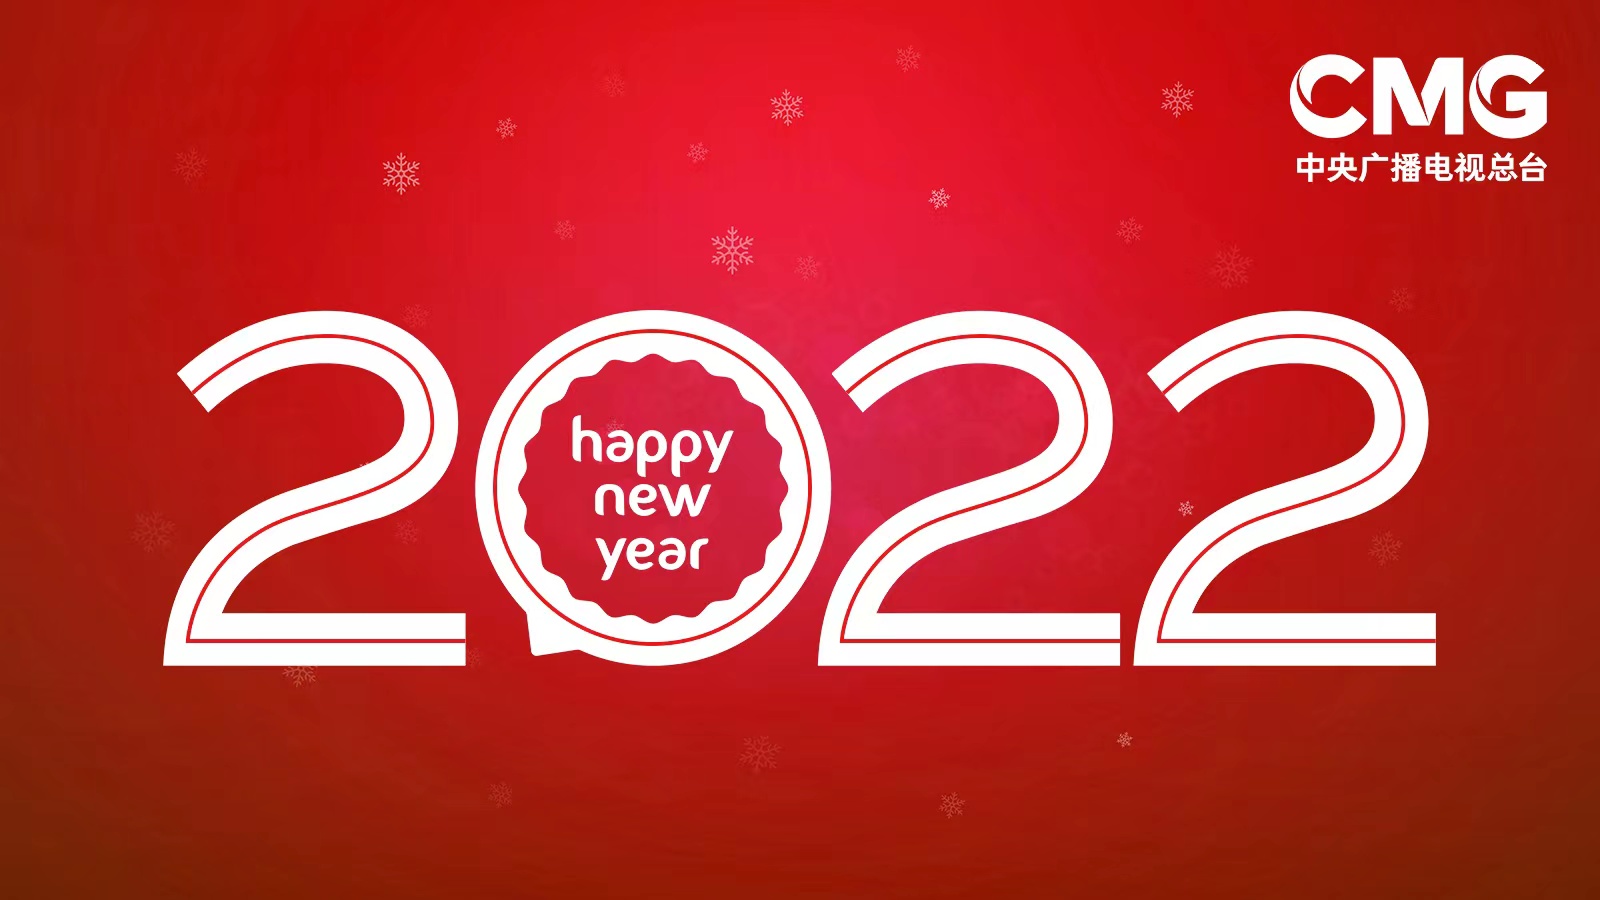 پیام تبریک رئیس رادیو و تلویزیون مرکزی چین به مناسبت فرا رسیدن سال 2022ا